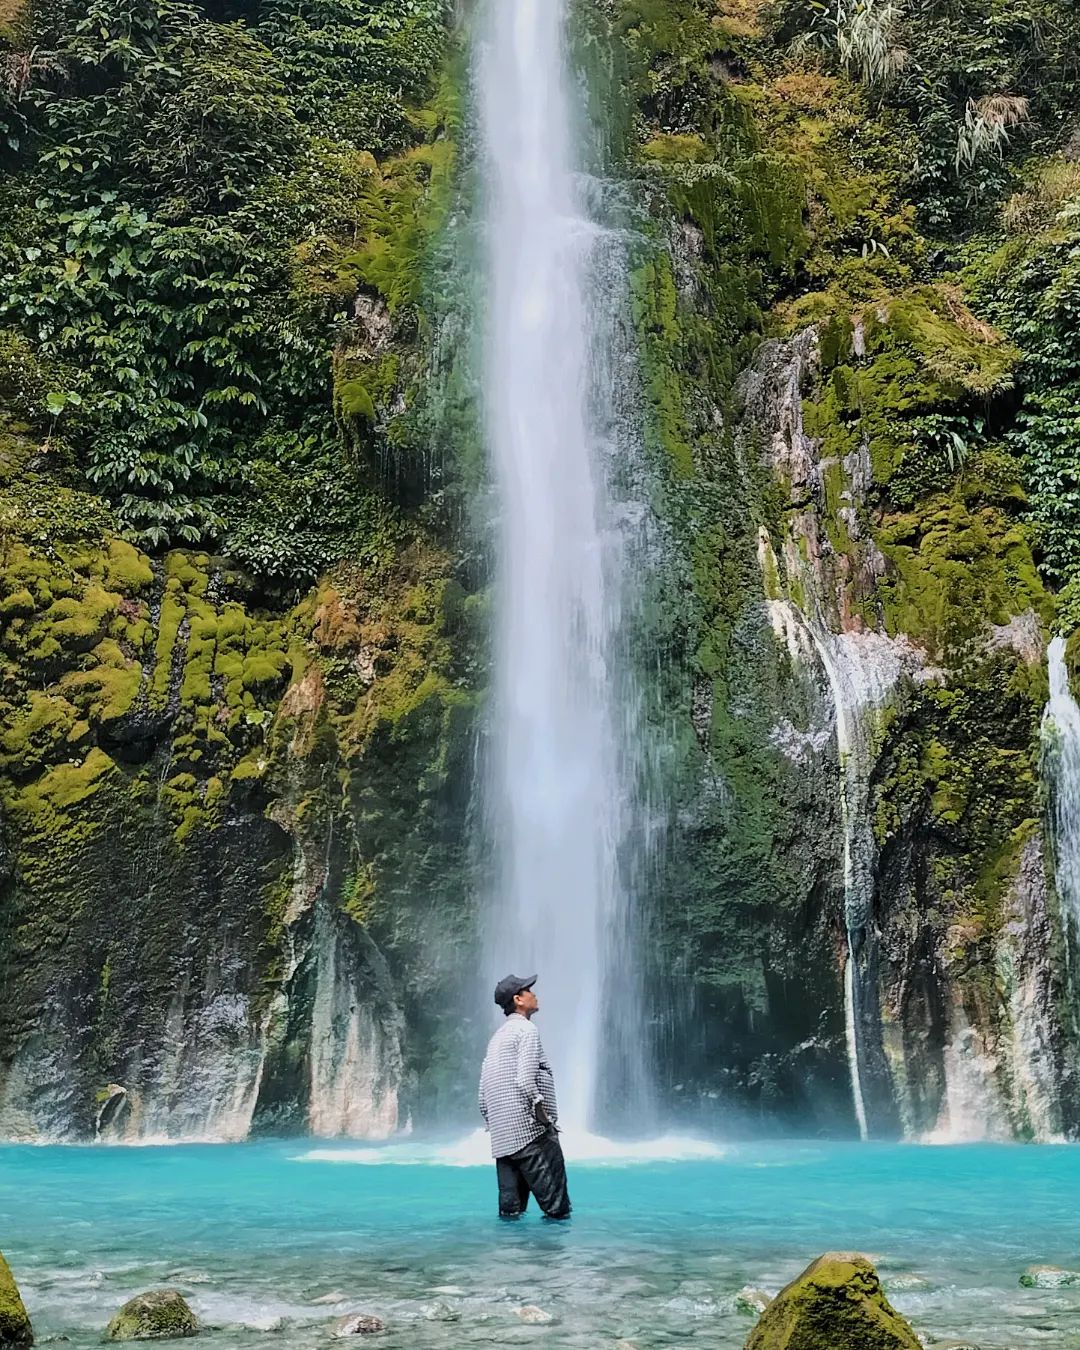 Air Terjun Dua Warna merupakan salah satu objek wisata yang terkenal di Taman Nasional Bukit Duabelas. Air terjun ini dinamakan demikian karena terdapat dua warna air yang berbeda pada setiap levelnya.